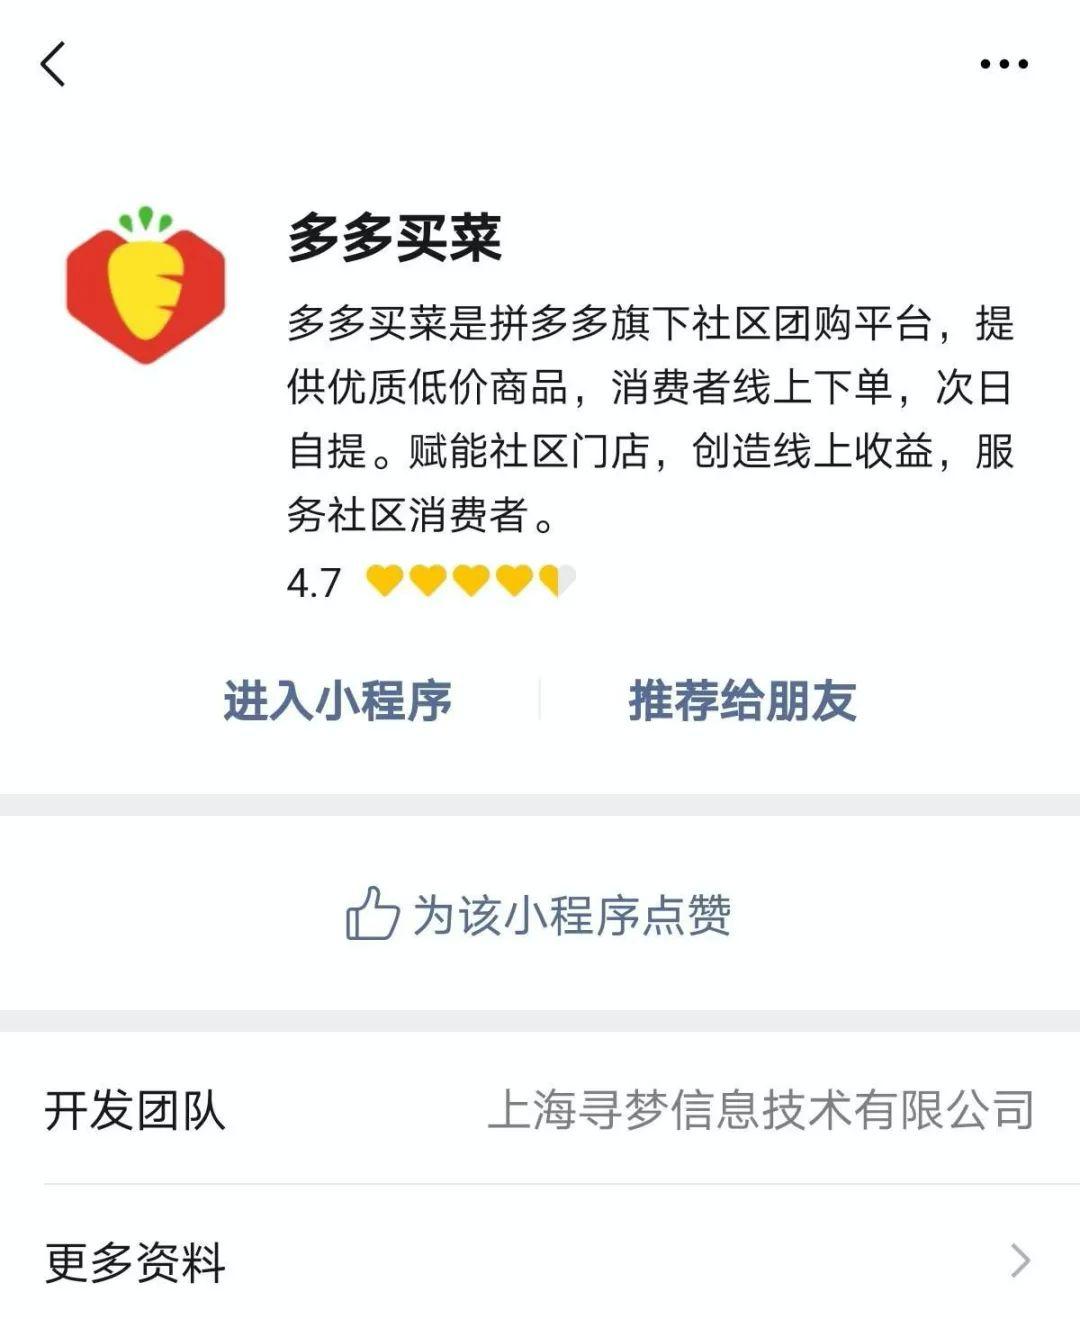 买菜app哪个好_苏州买菜用哪个app好_深圳买菜app